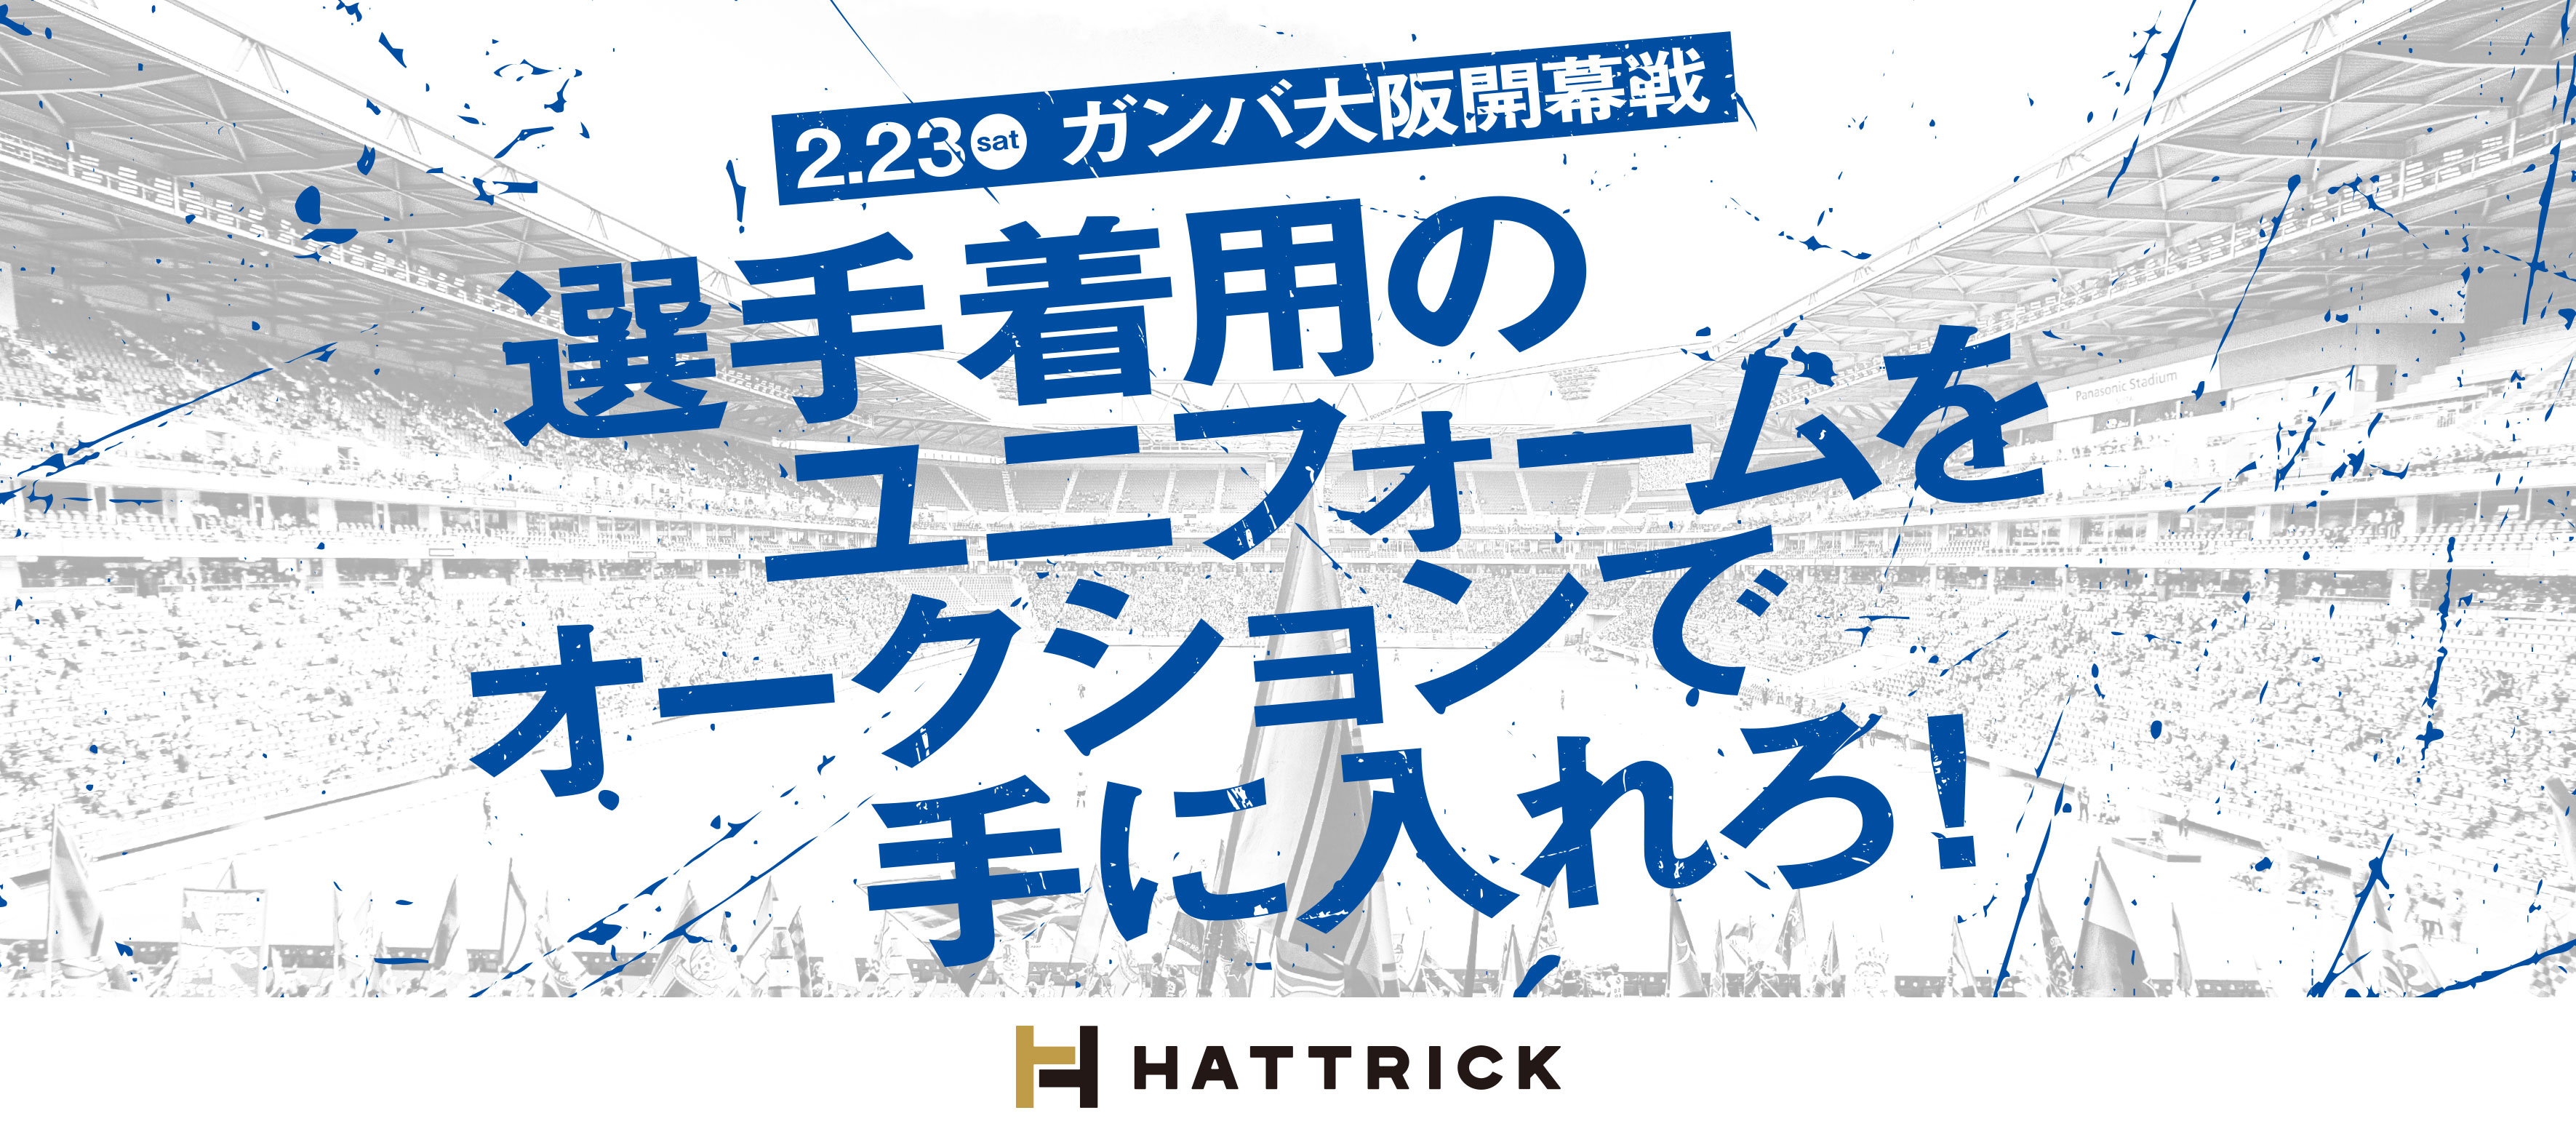 世界に一つのユニフォームをオークションで手に入れろ ガンバ大阪とのコラボ企画 Hattrick 詳細決定 2月23日 土 ガンバ大阪開幕戦 よりいよいよスタート バリュエンスのプレスリリース